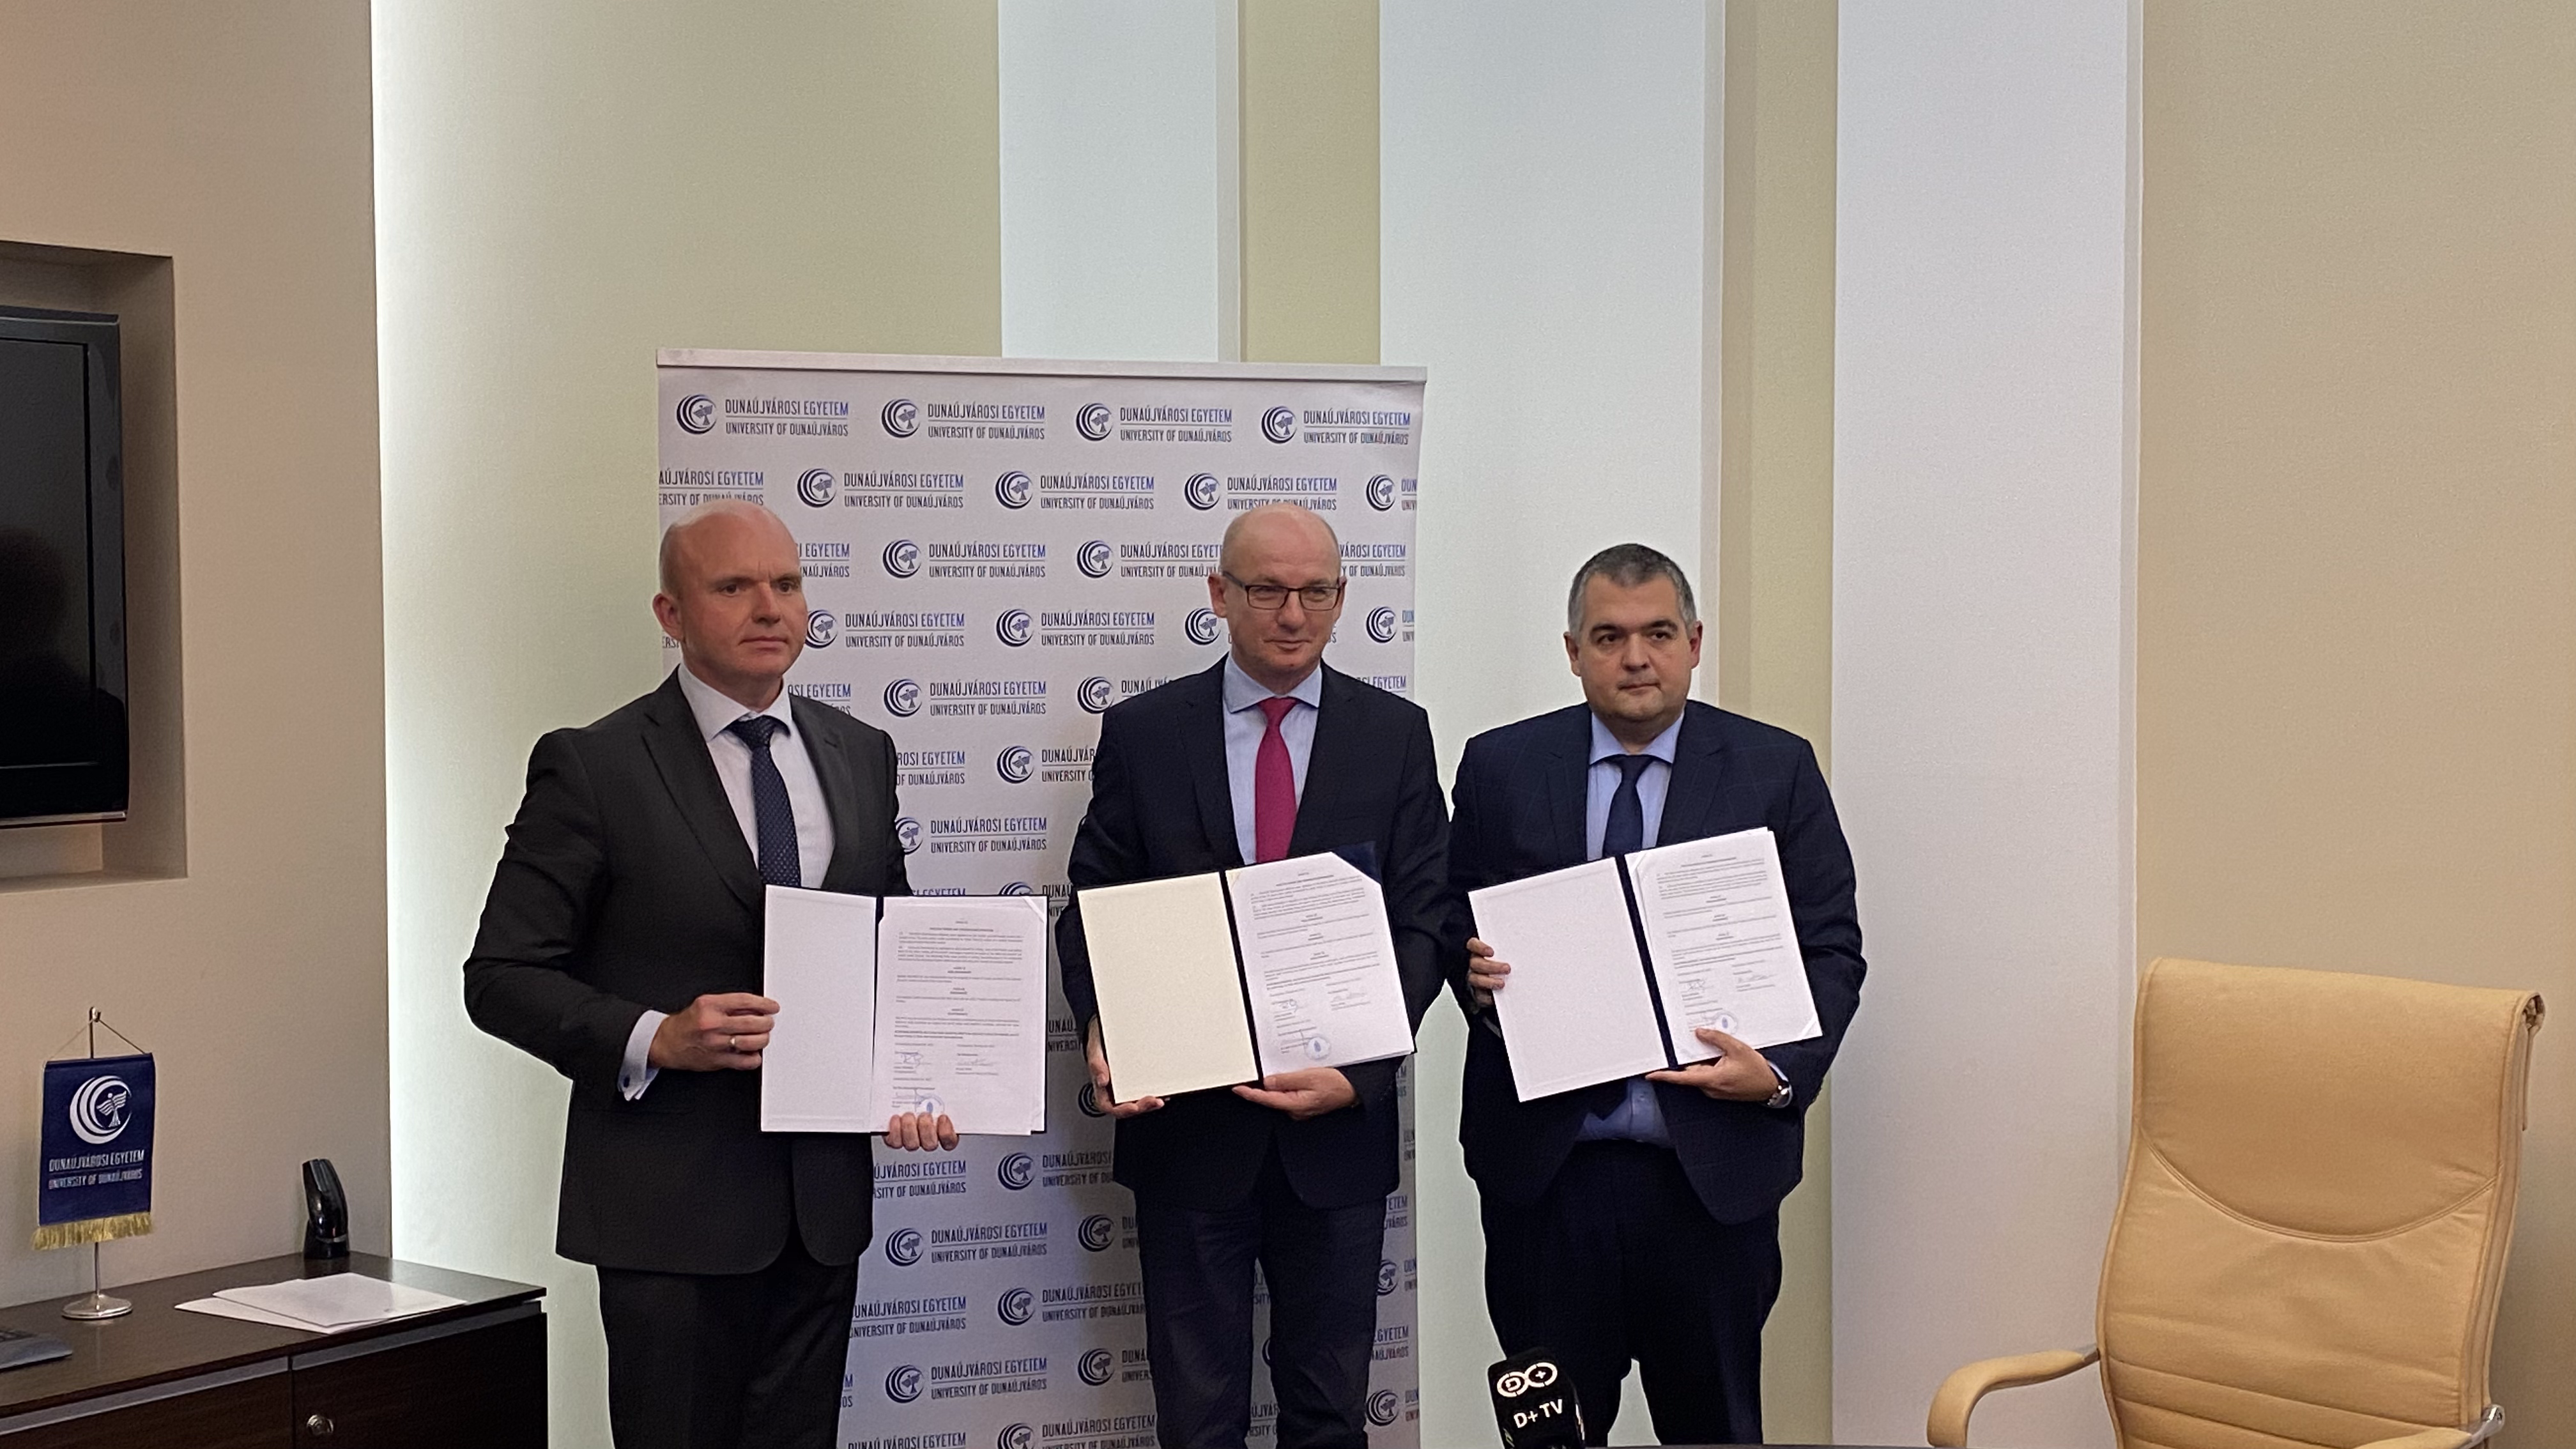 Háromoldalú együttműködési megállapodást írt alá a Dunaújvárosi Egyetem, a Hunatom és a Framatome